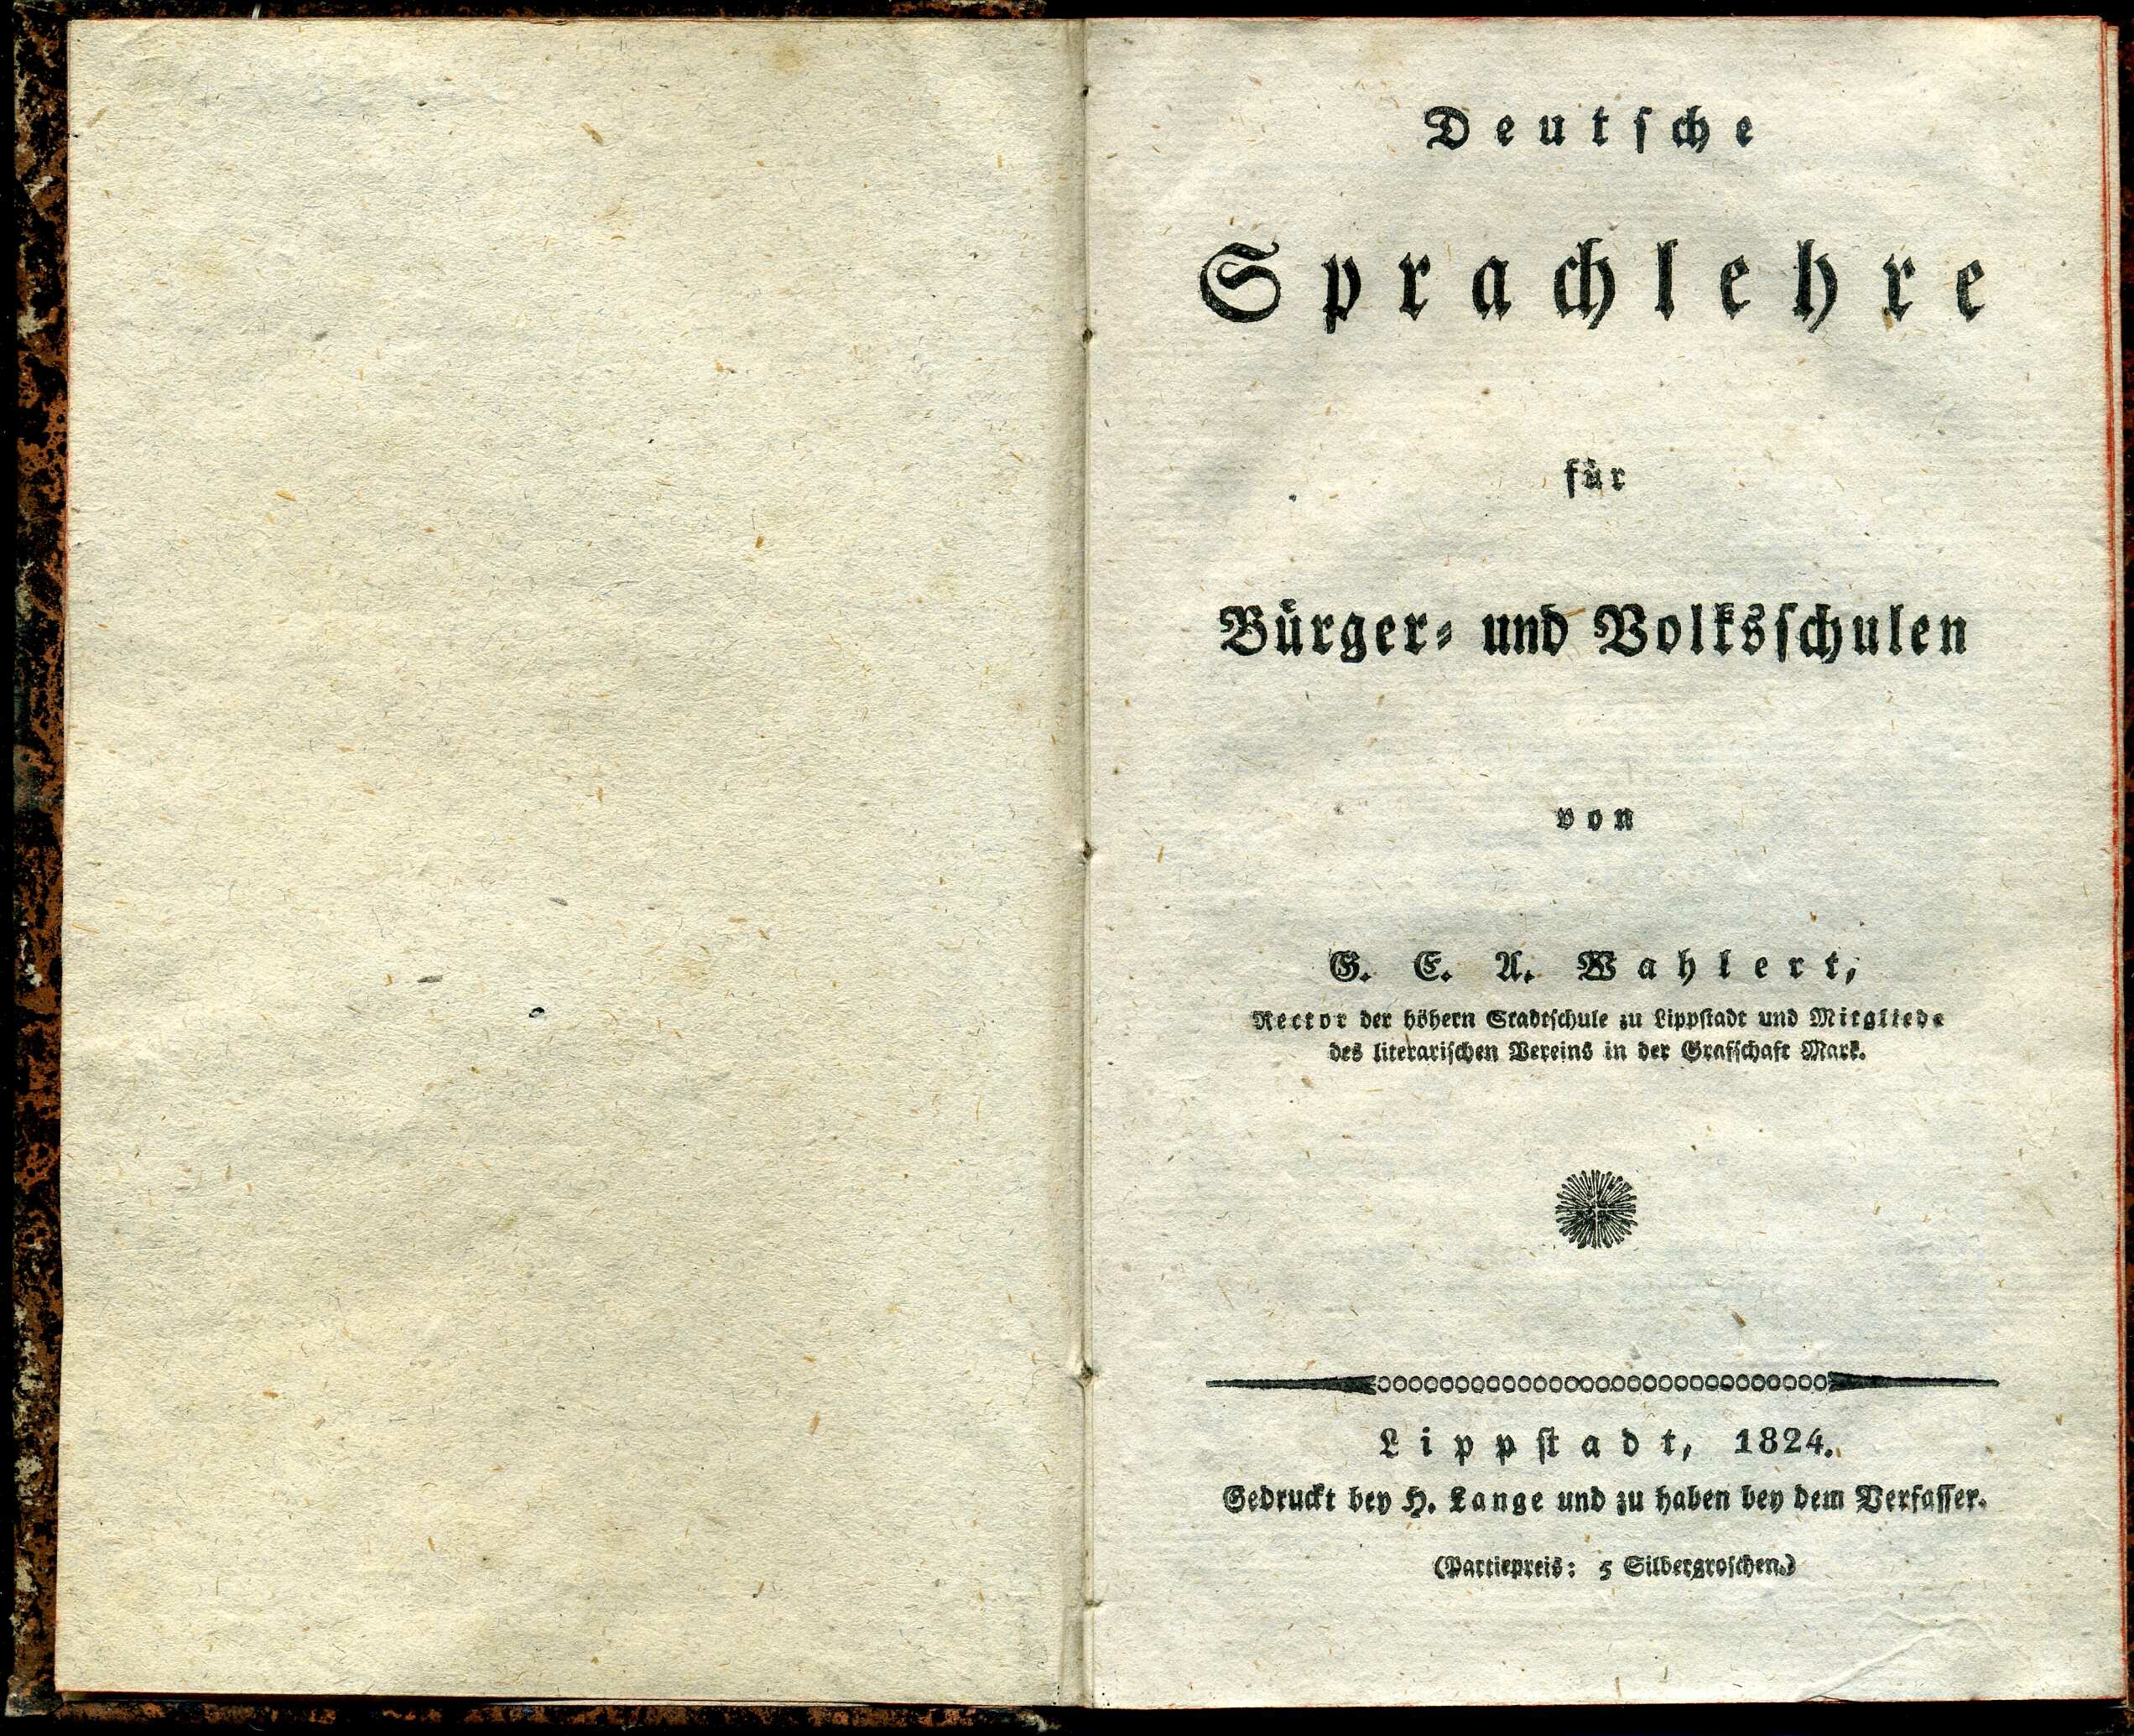 Deutsches Sprachlehrbuch von Georg Ernst Adam Wahlert (Stadtmuseum Lippstadt RR-F)